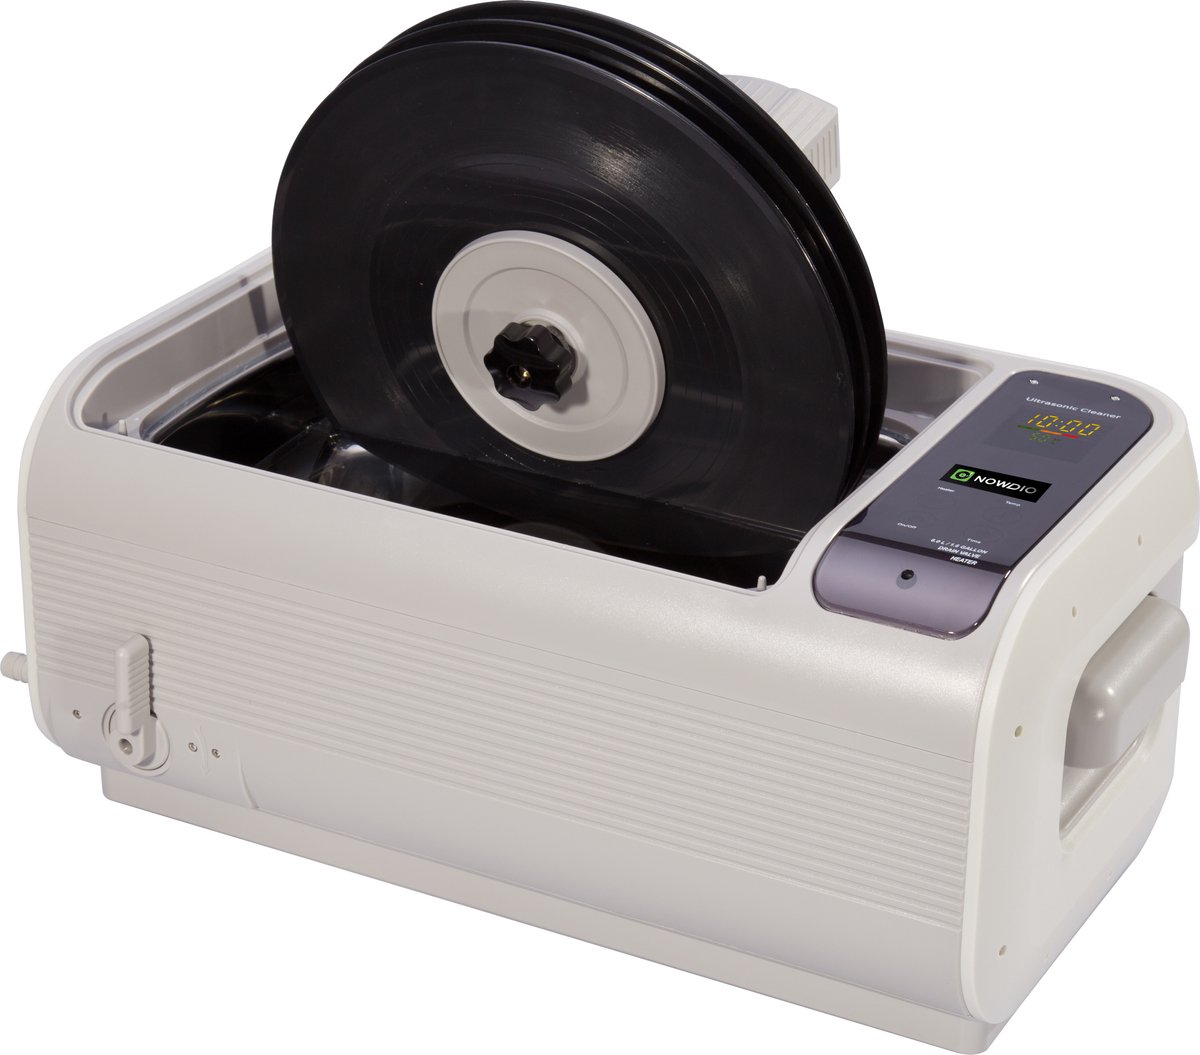 Protecteur de nettoyage d'étiquettes vinylique pour disques